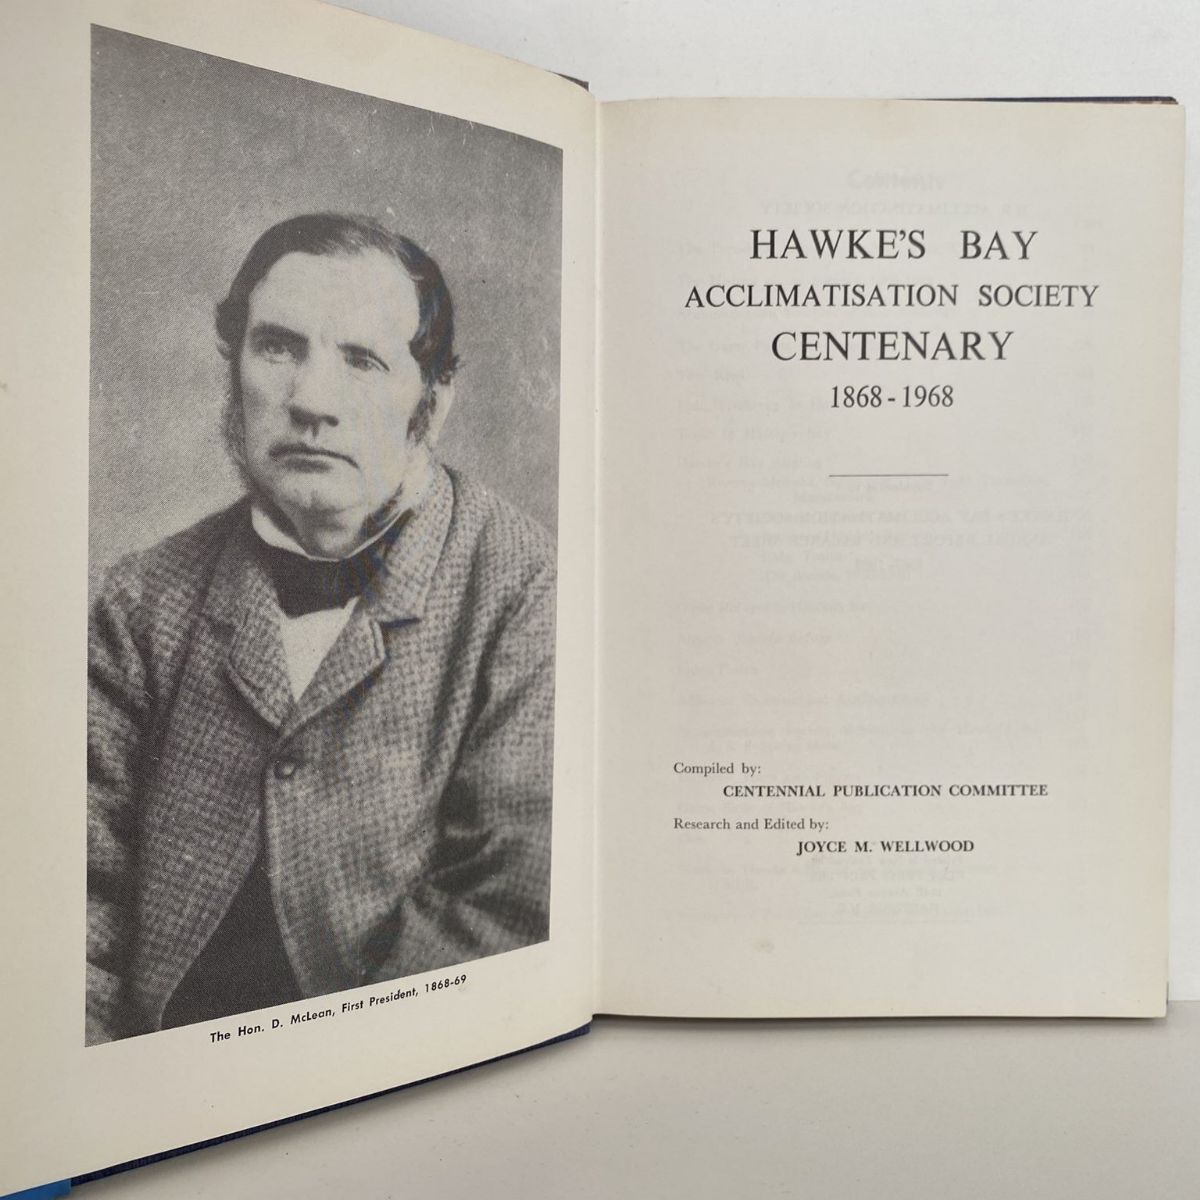 HAWKE'S BAY Acclimatisation Society Centenary 1868-1968